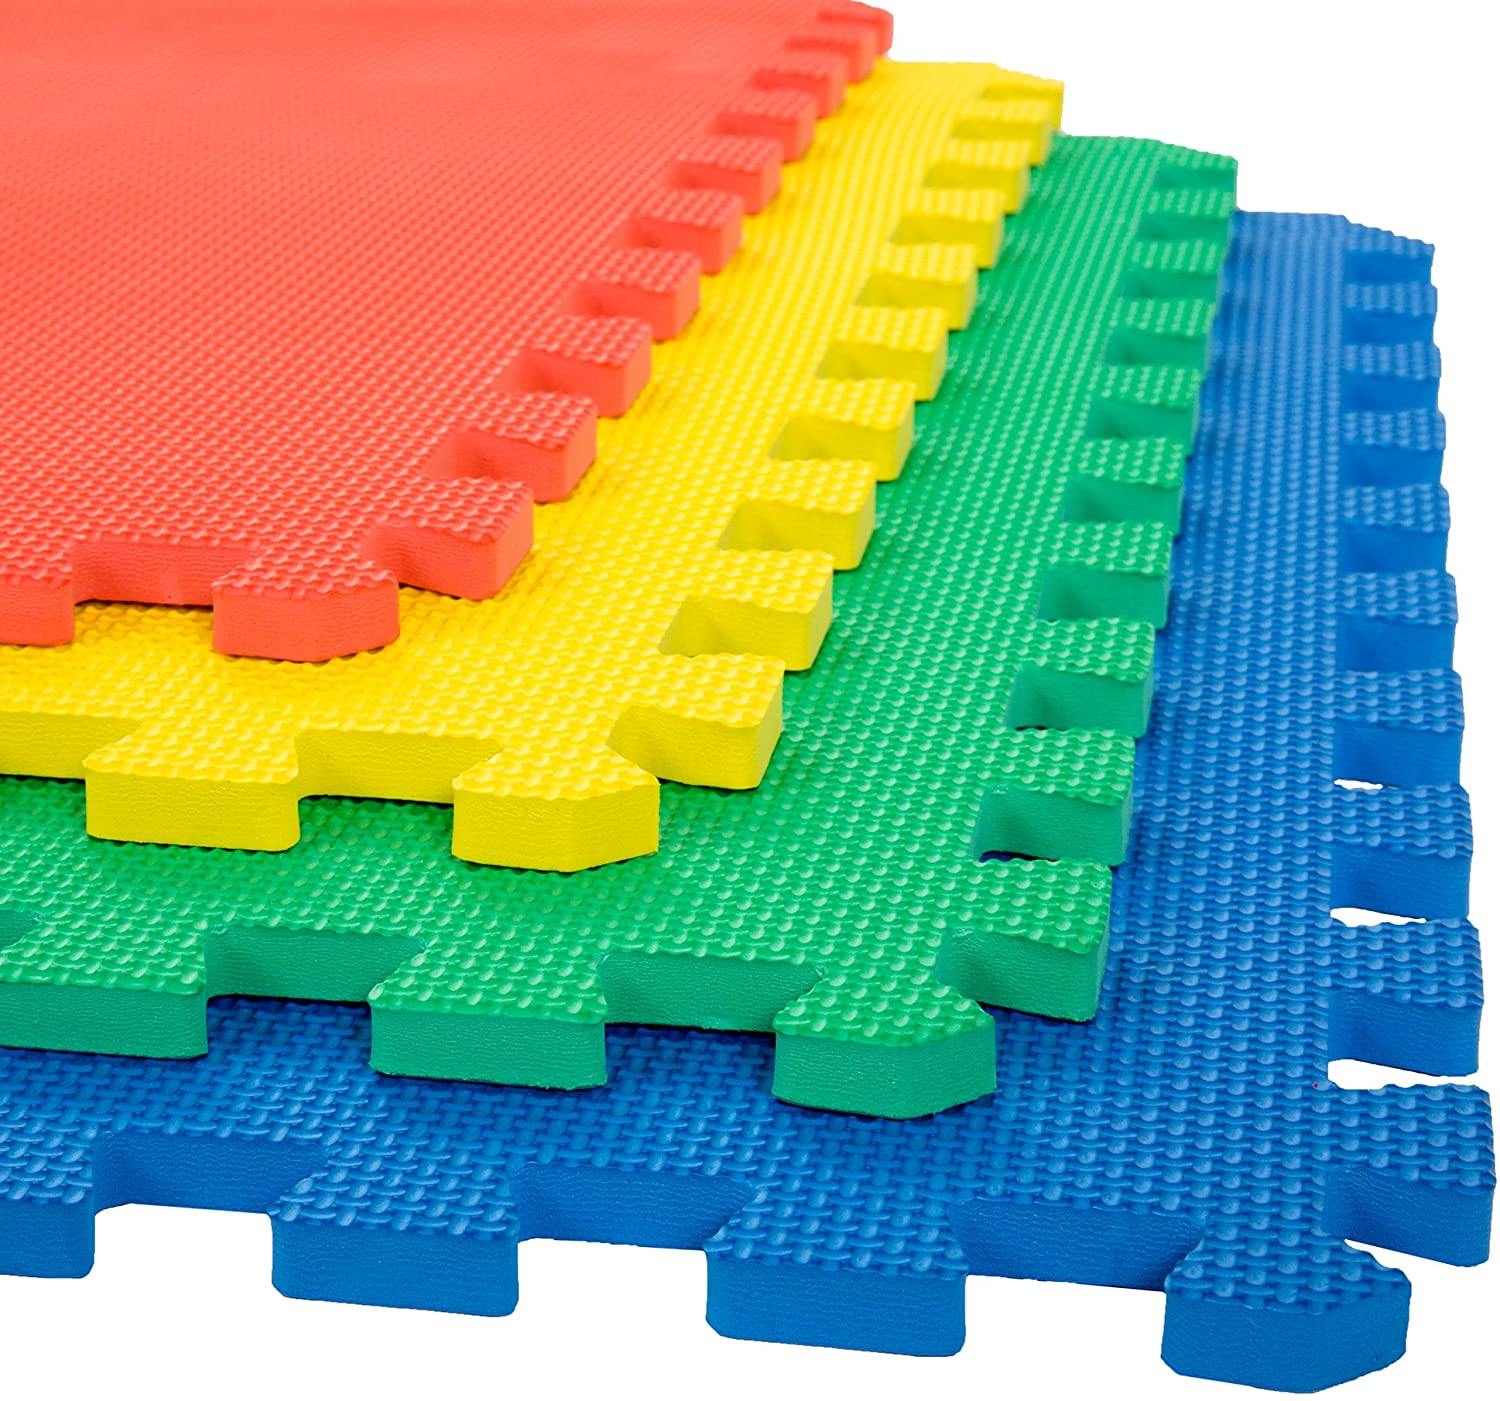 Megastar Mat Floor Tiles Interlocking Eva Foam Padding Soft Flooring for Exercising